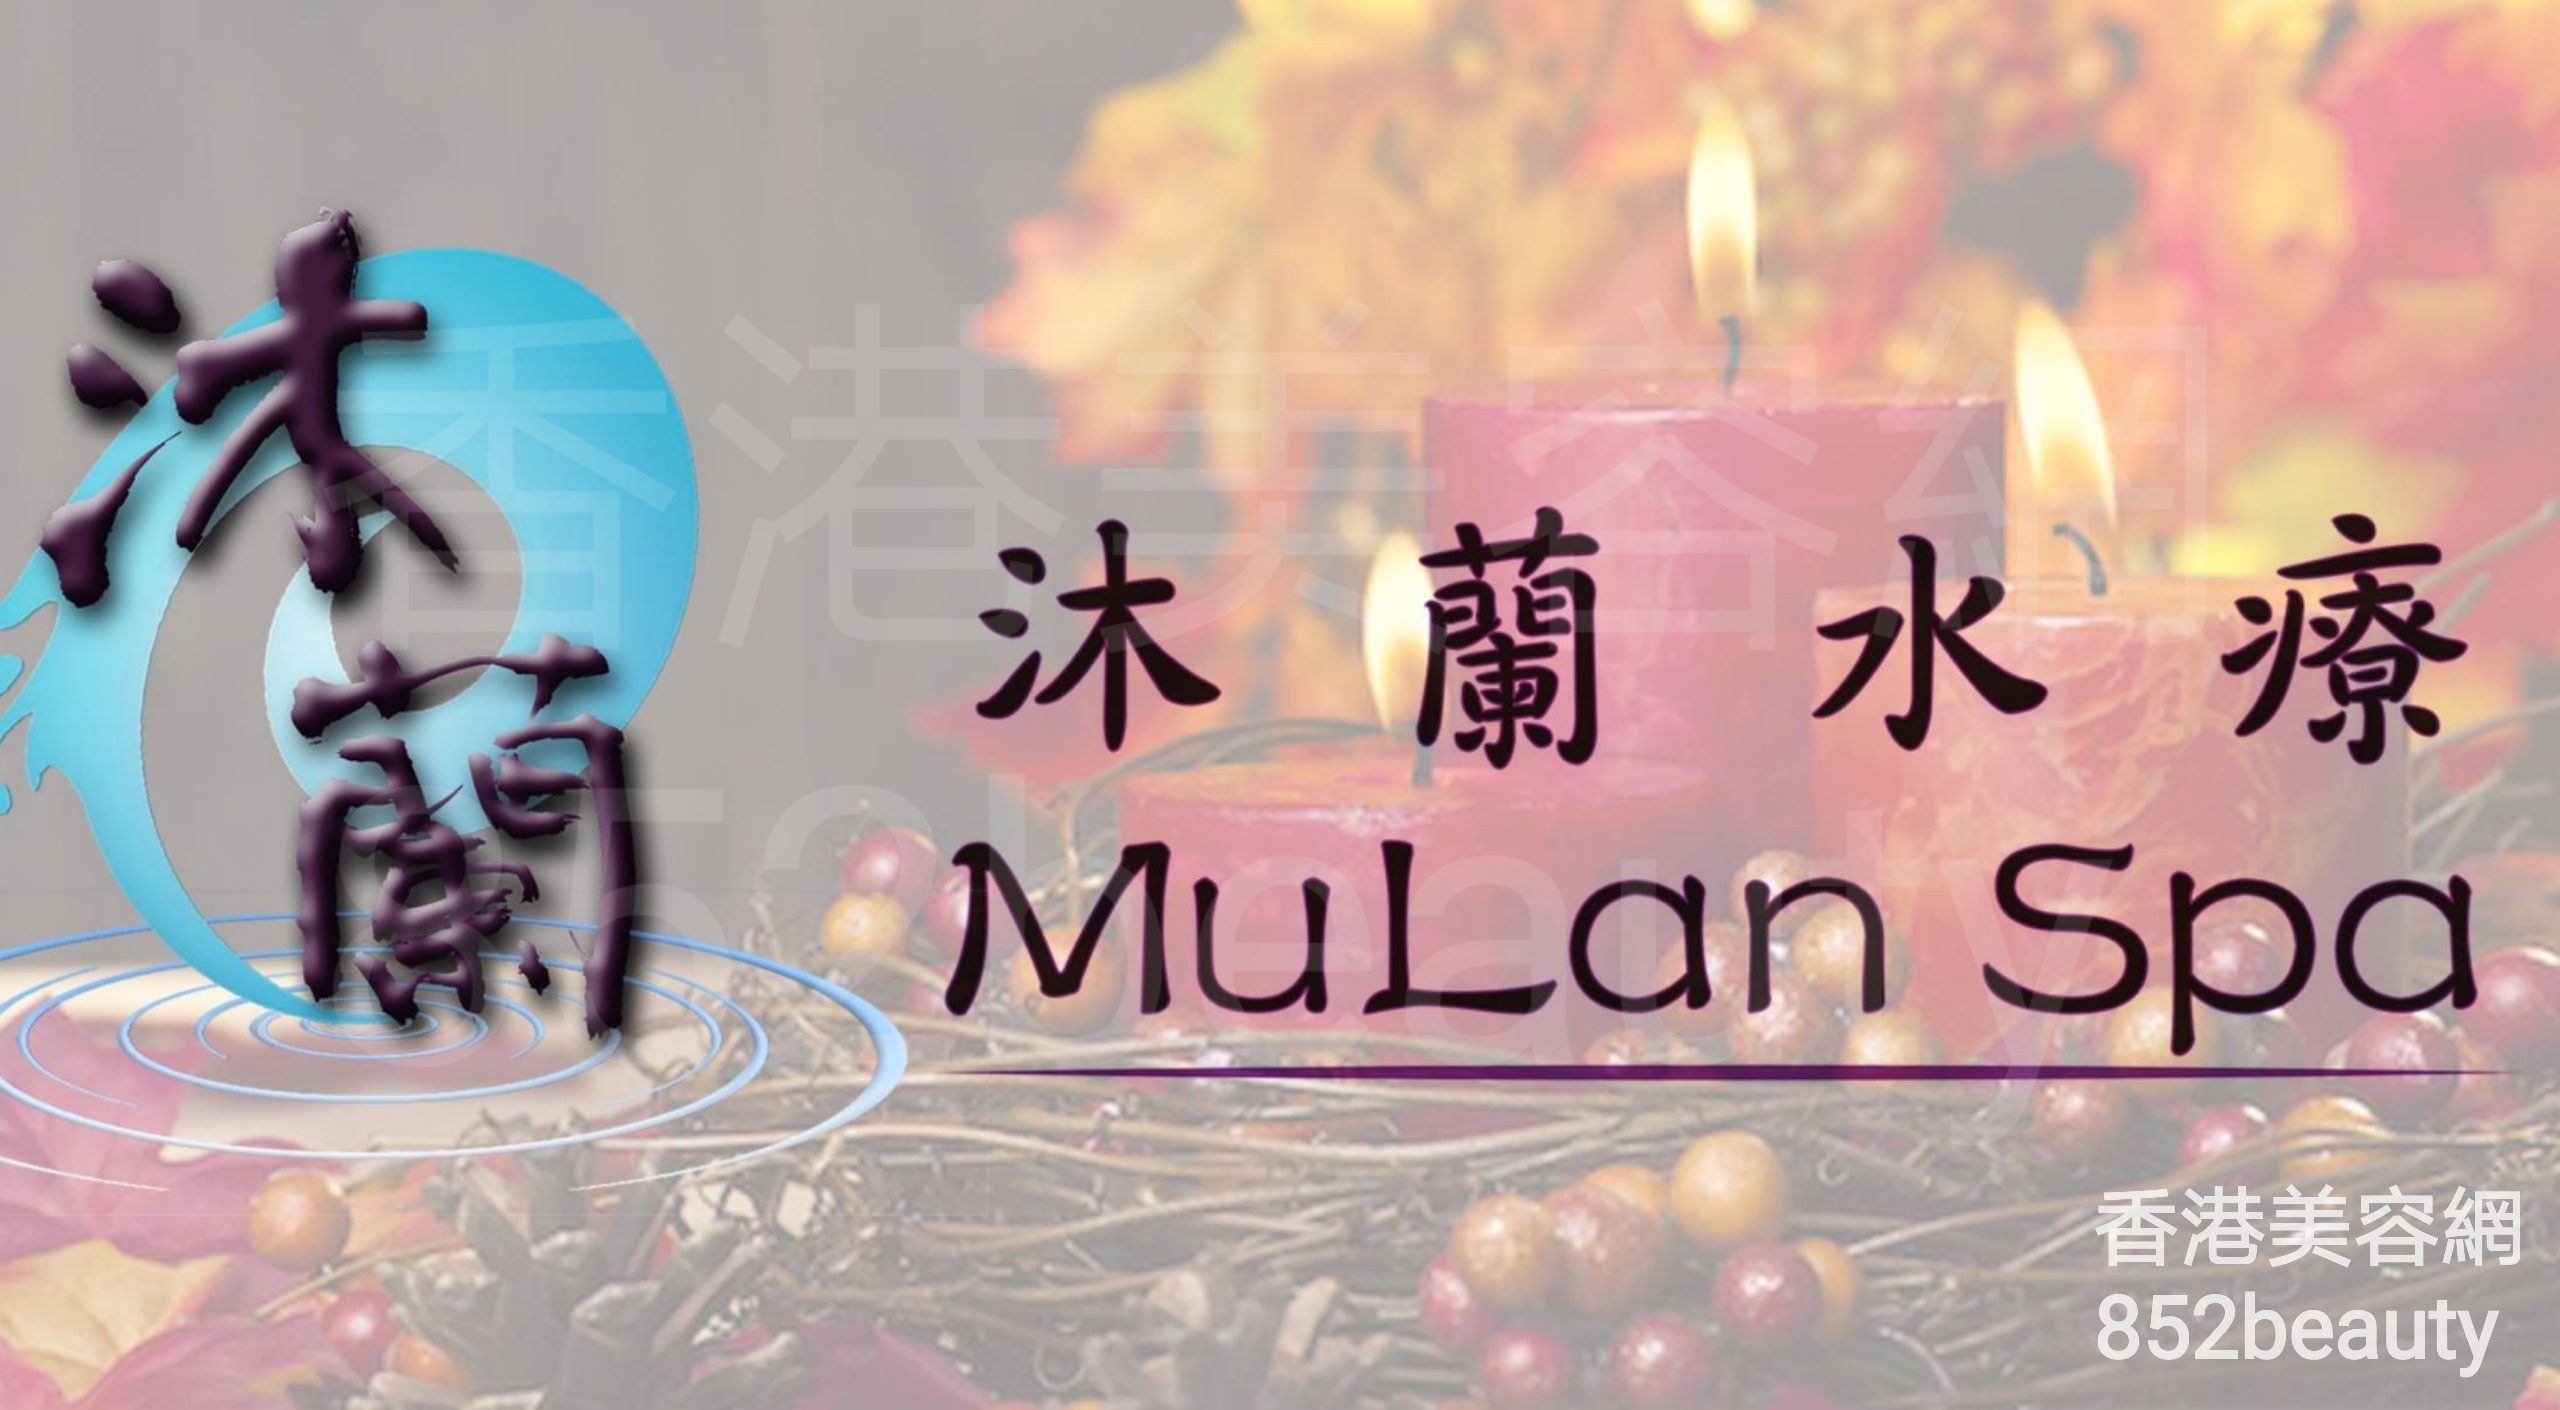 面部护理: 沐蘭水療 - MuLan Spa (灣仔分店)